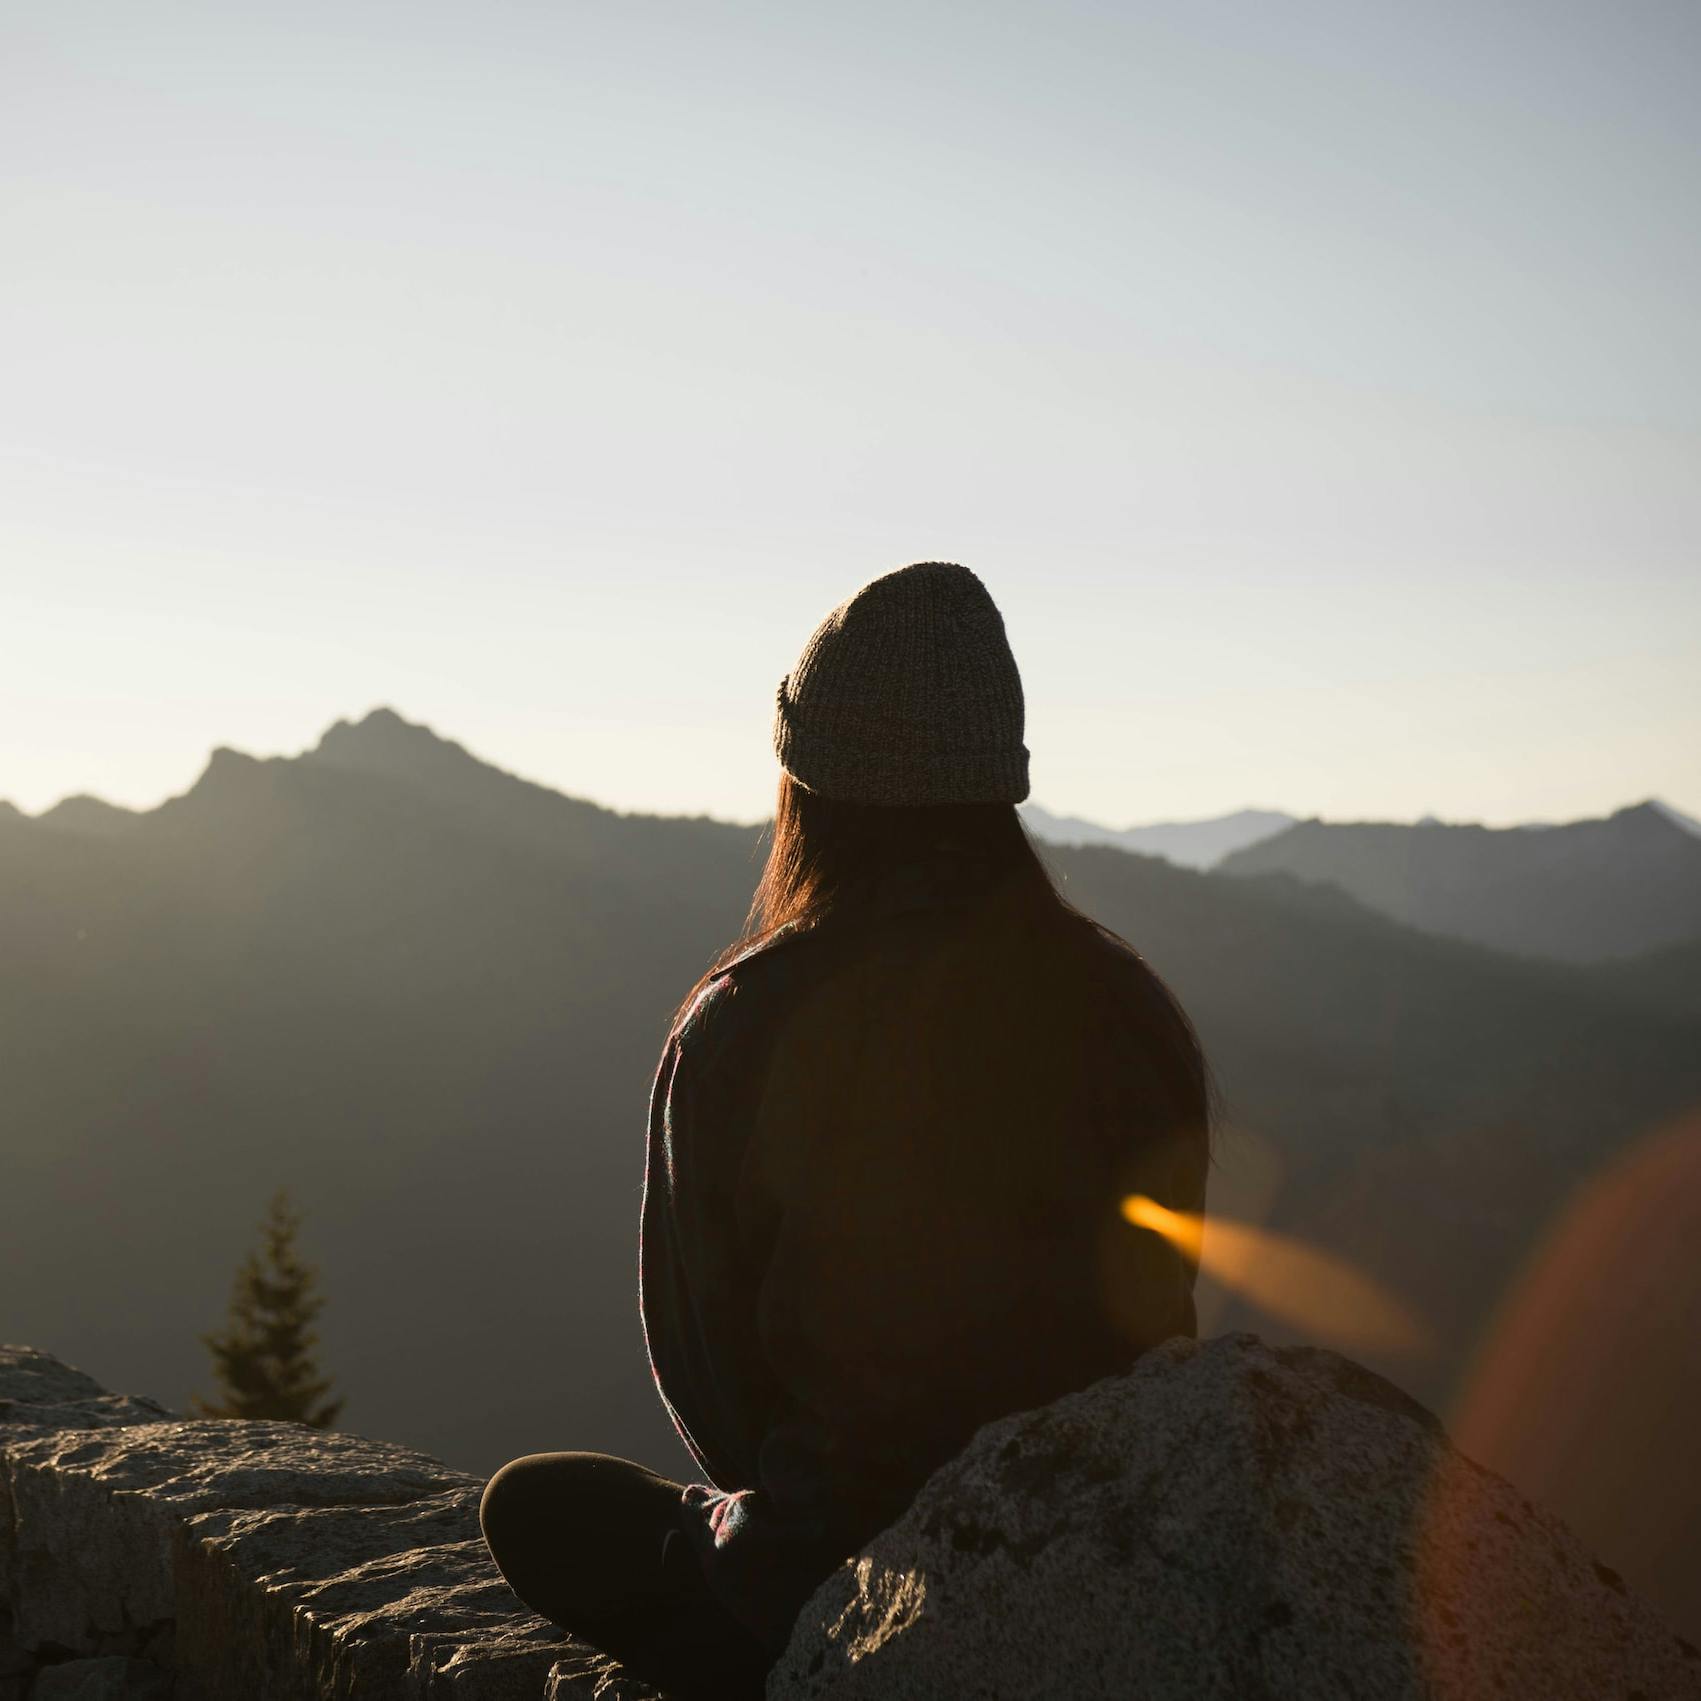 Fotografia di una donna vista di spalle seduta su un terreno roccioso che contempla un paesaggio montano con il sole che la illumina frontalmente.